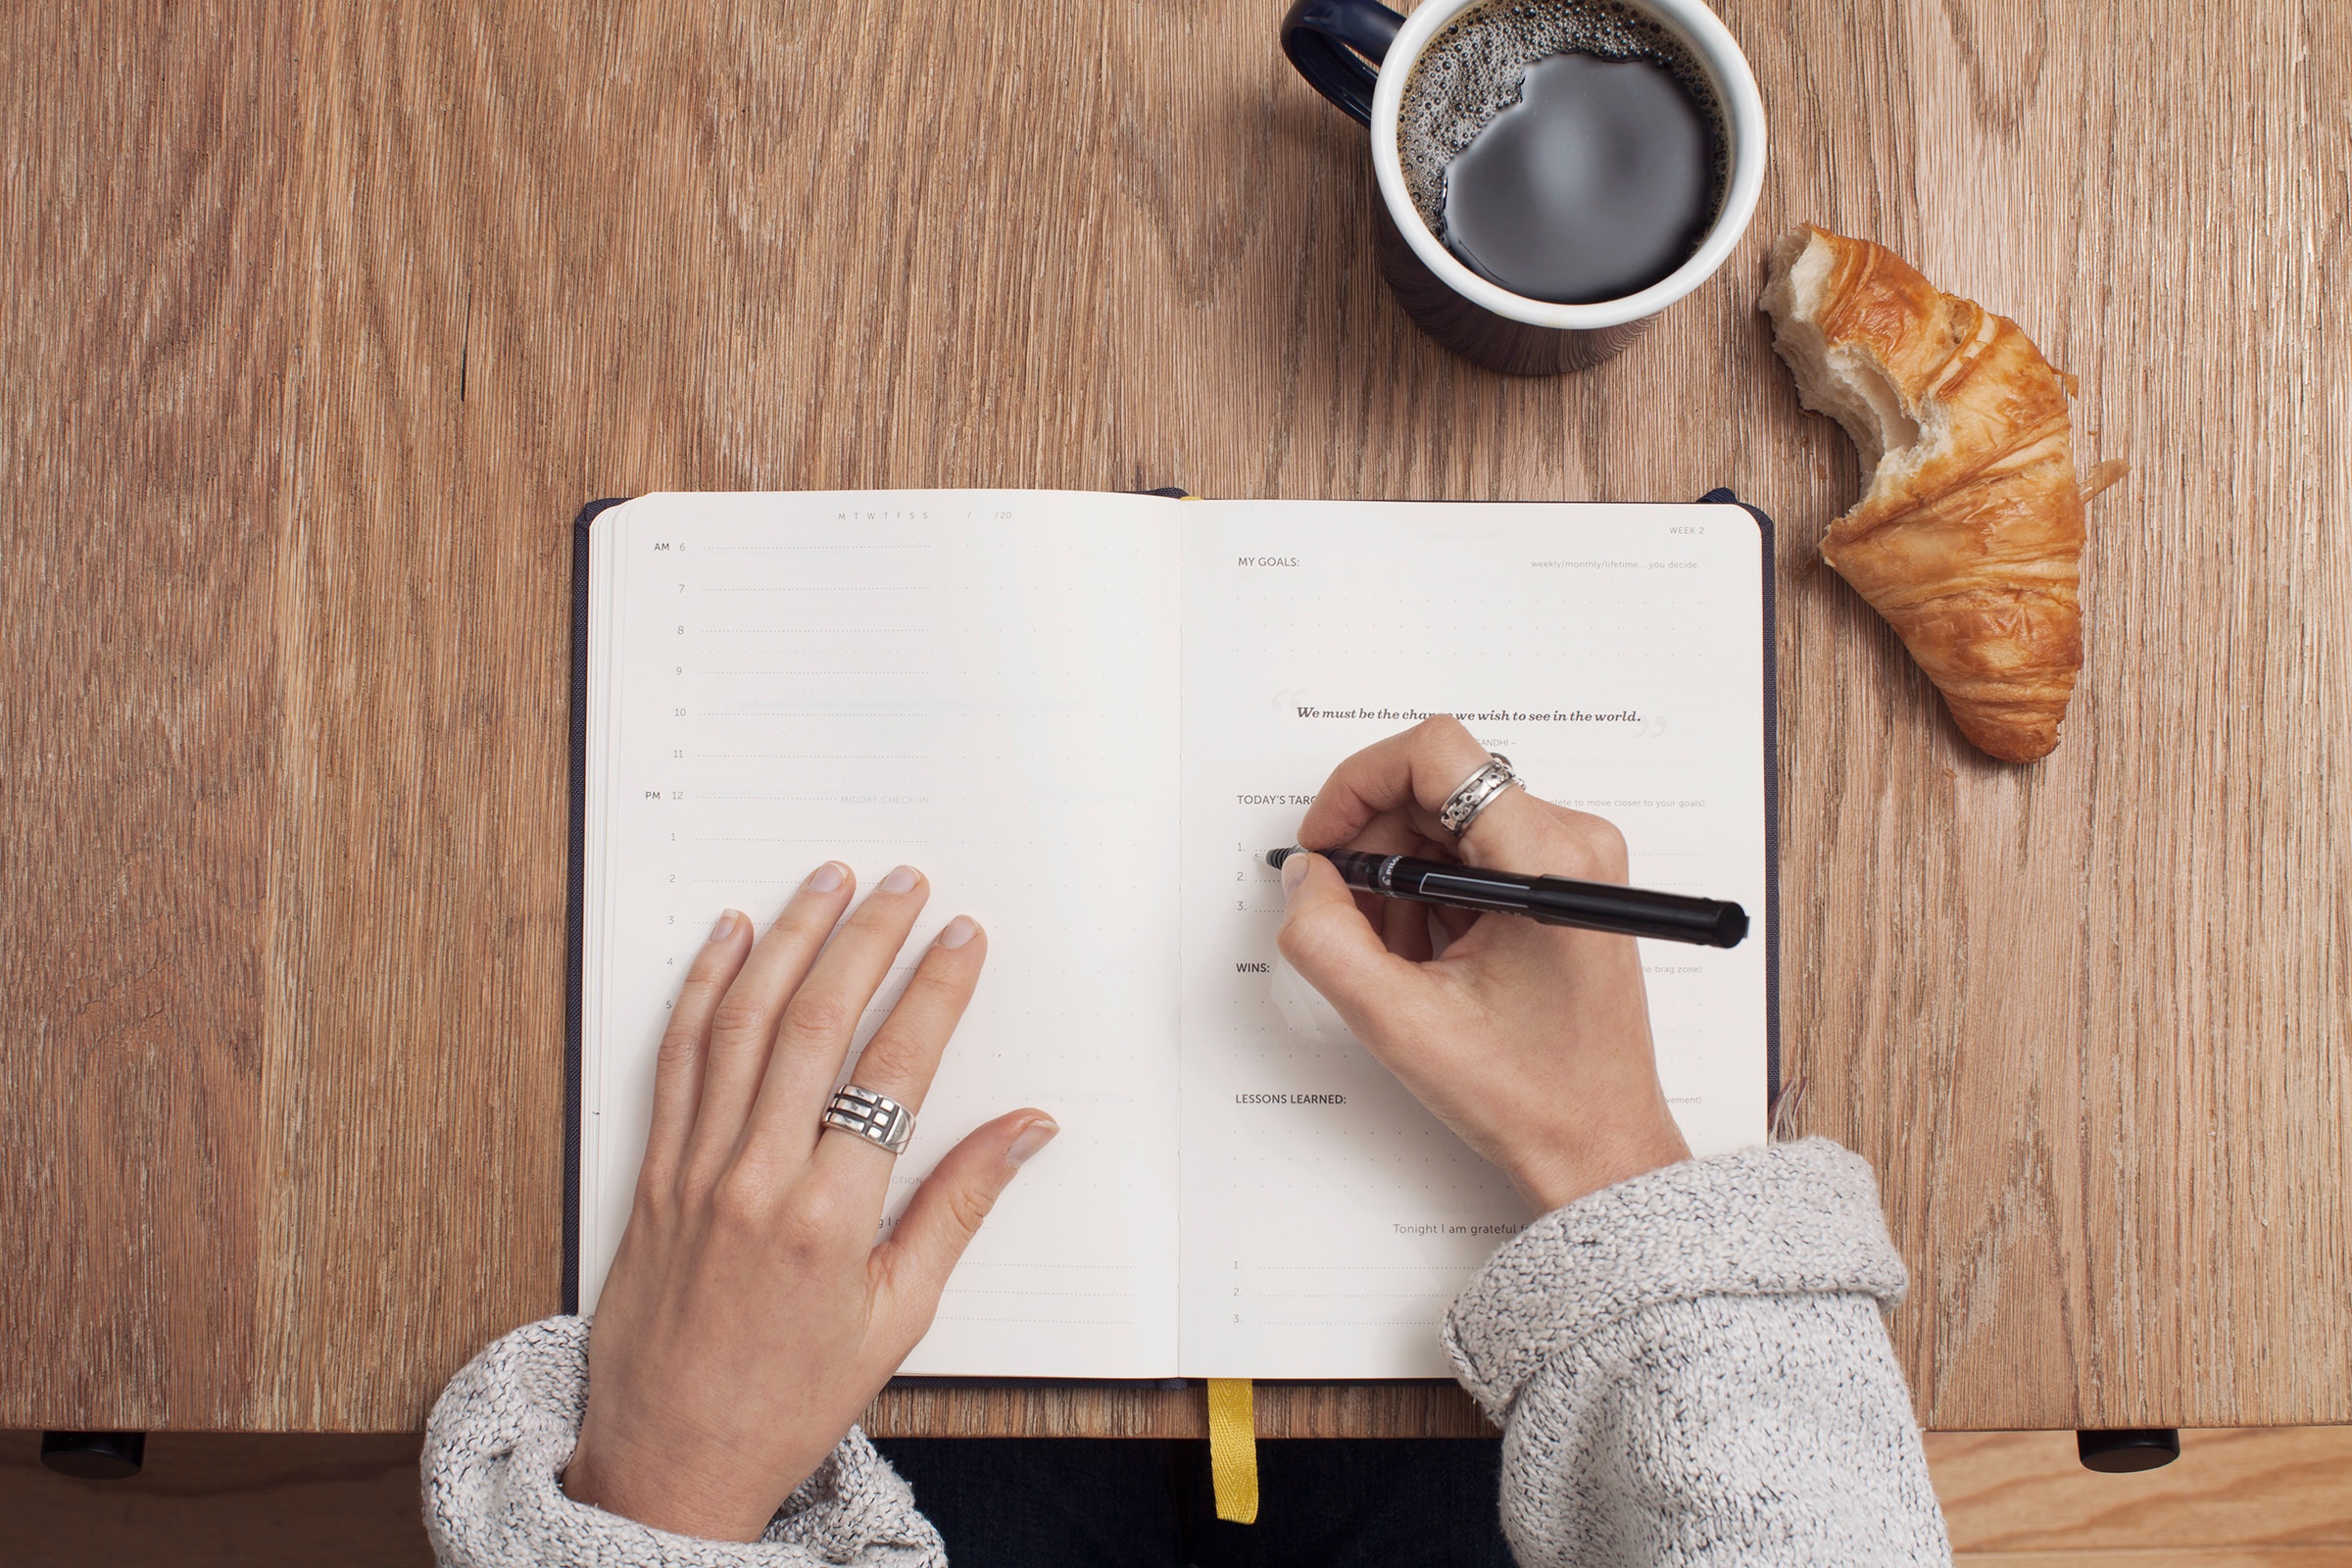 Schreibtisch mit Kalender und Kaffeetasse